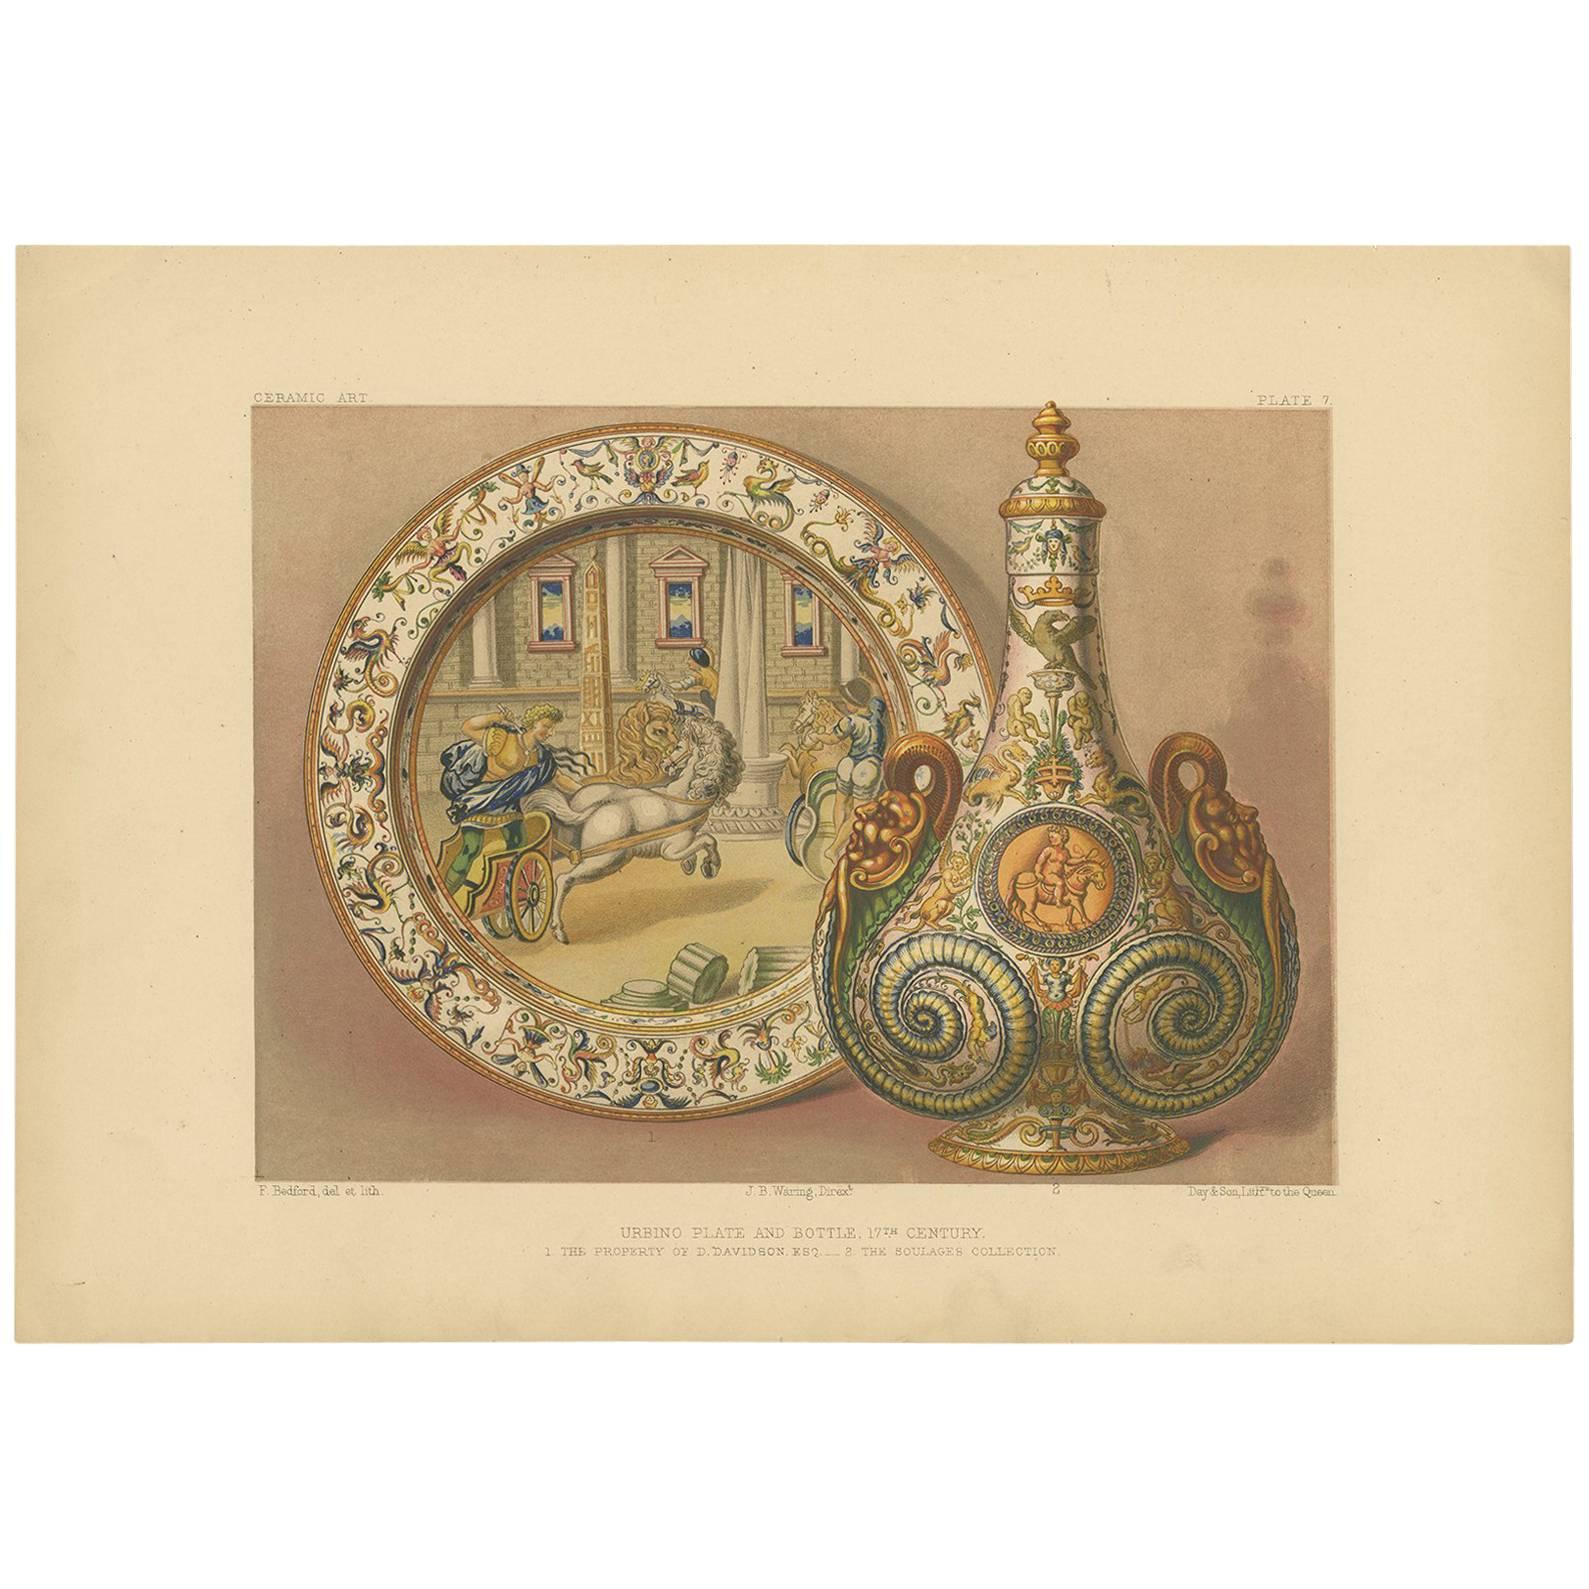 Impression ancienne d'une assiette et d'une bouteille en céramique de l'Ouralbino Pl. 7 par Bedford, vers 1857